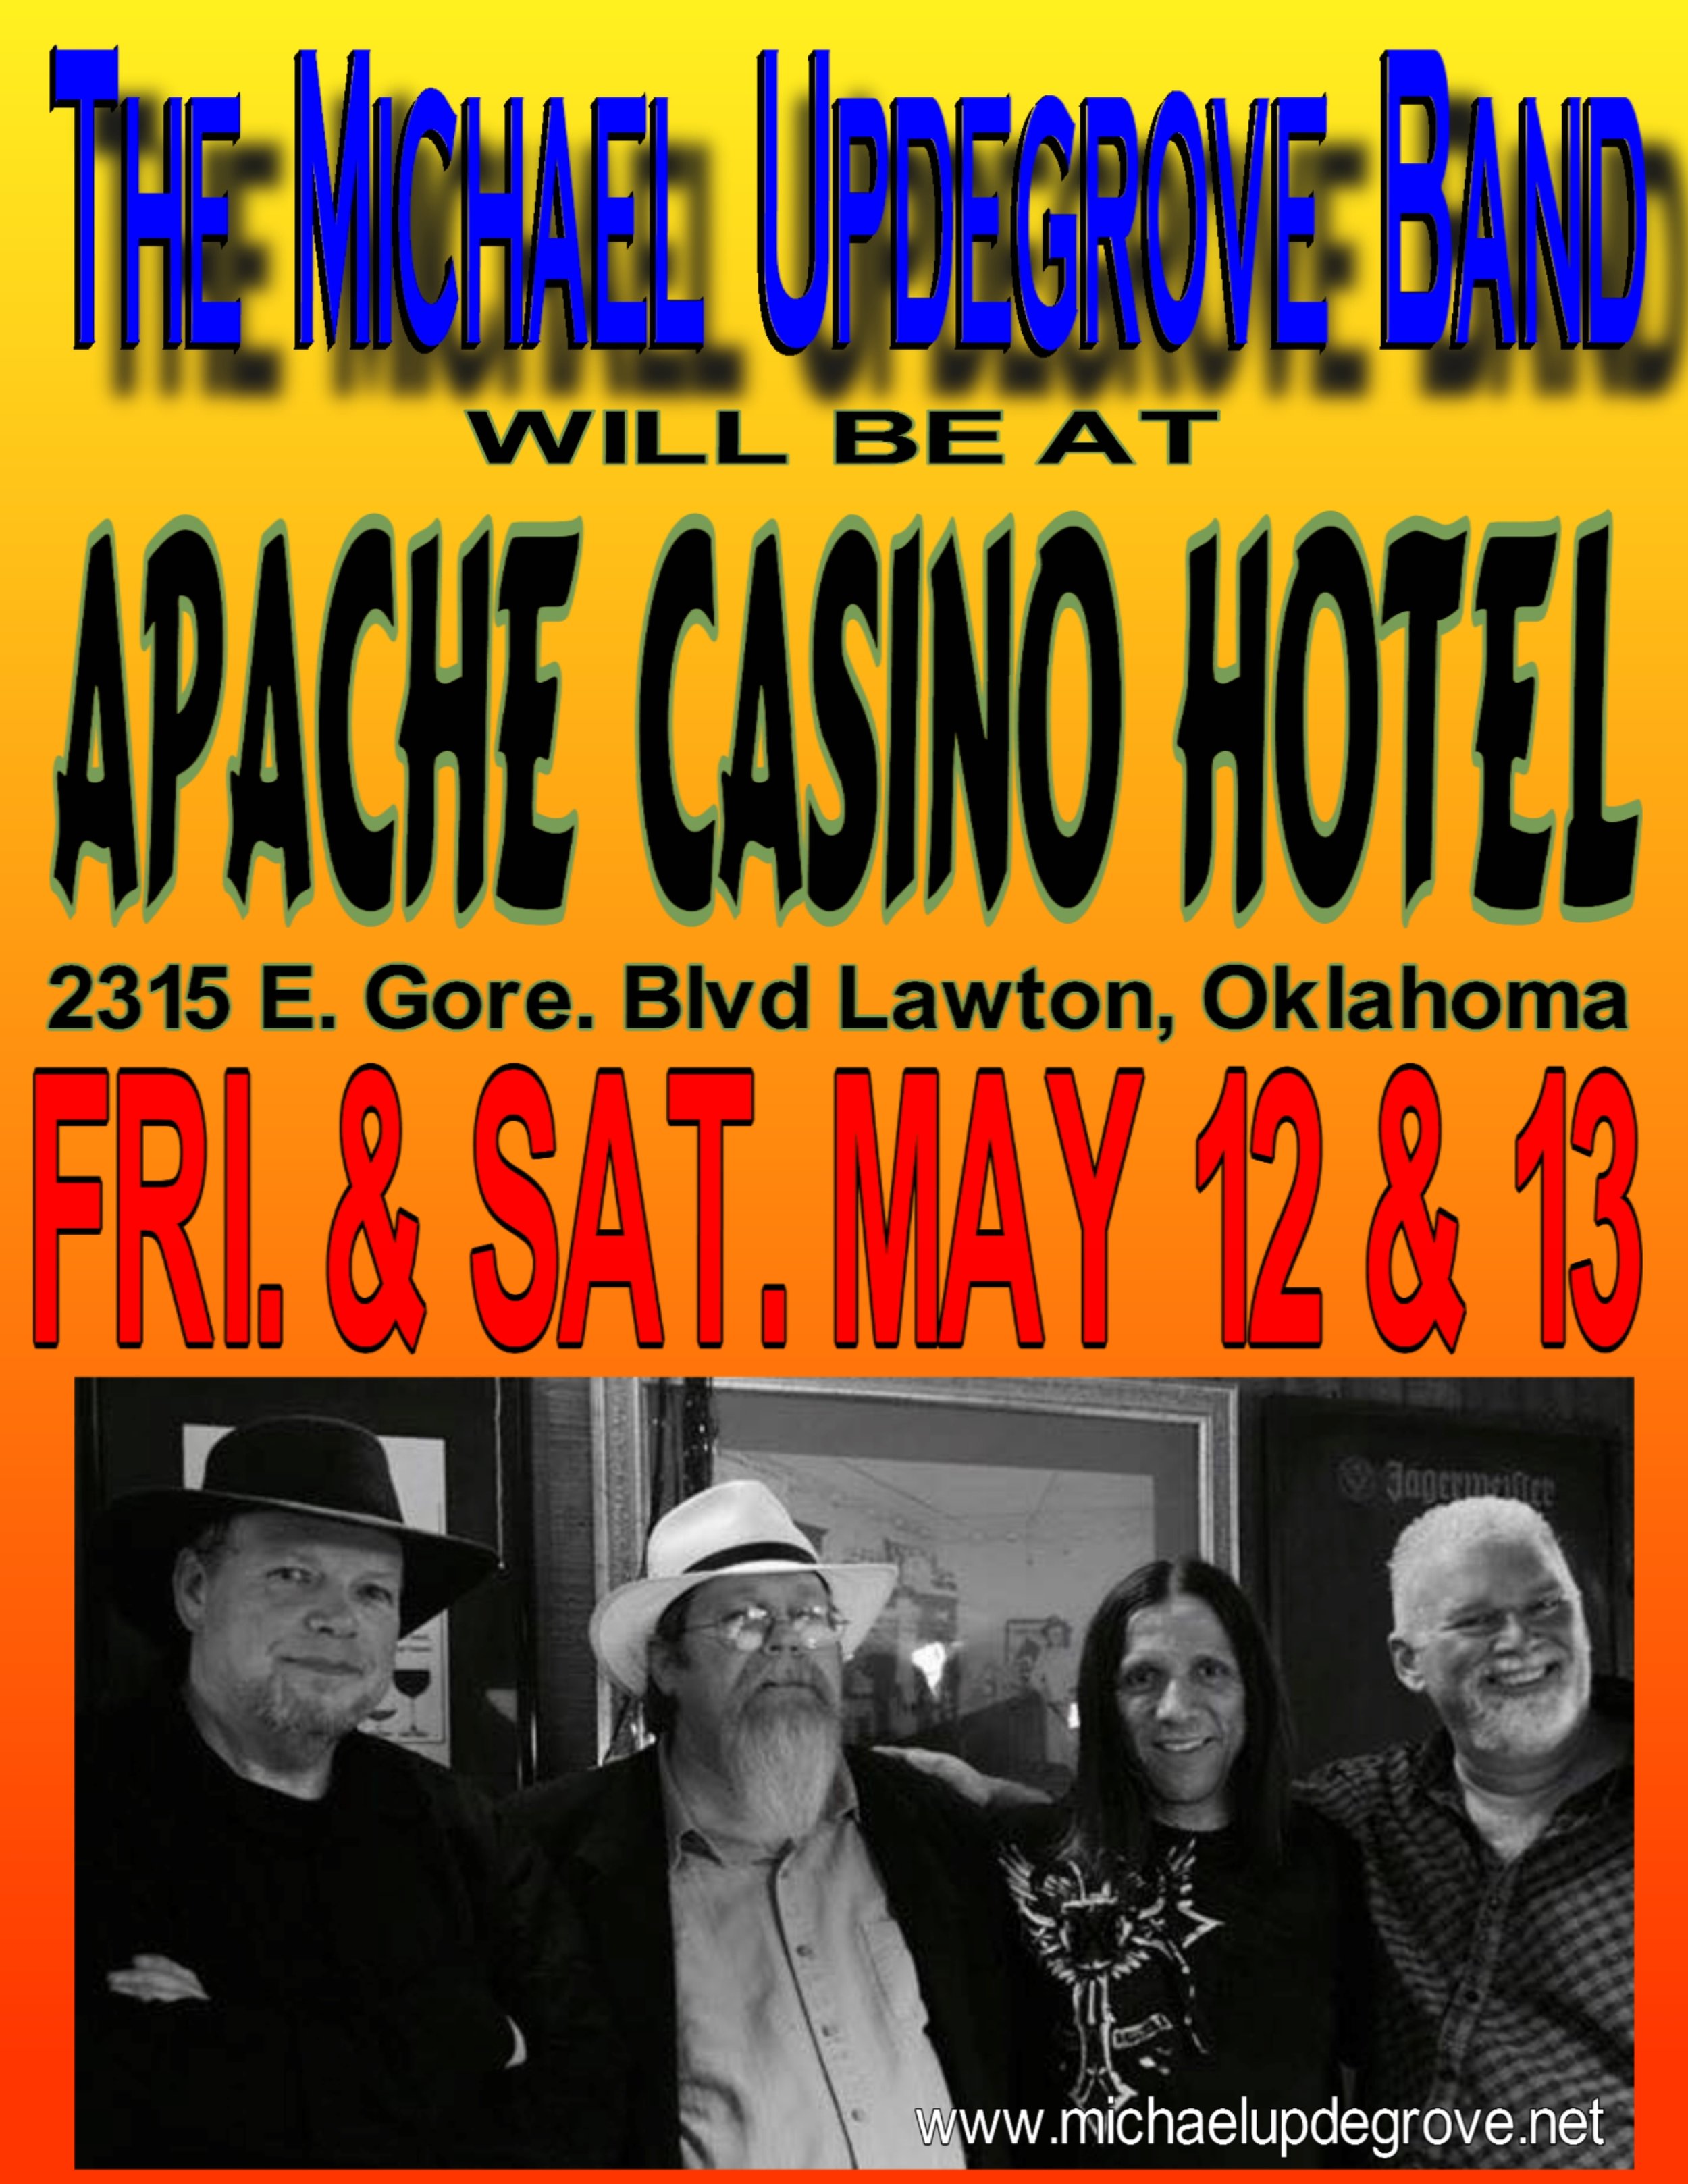 The Apache Casino MAY 2017.jpg